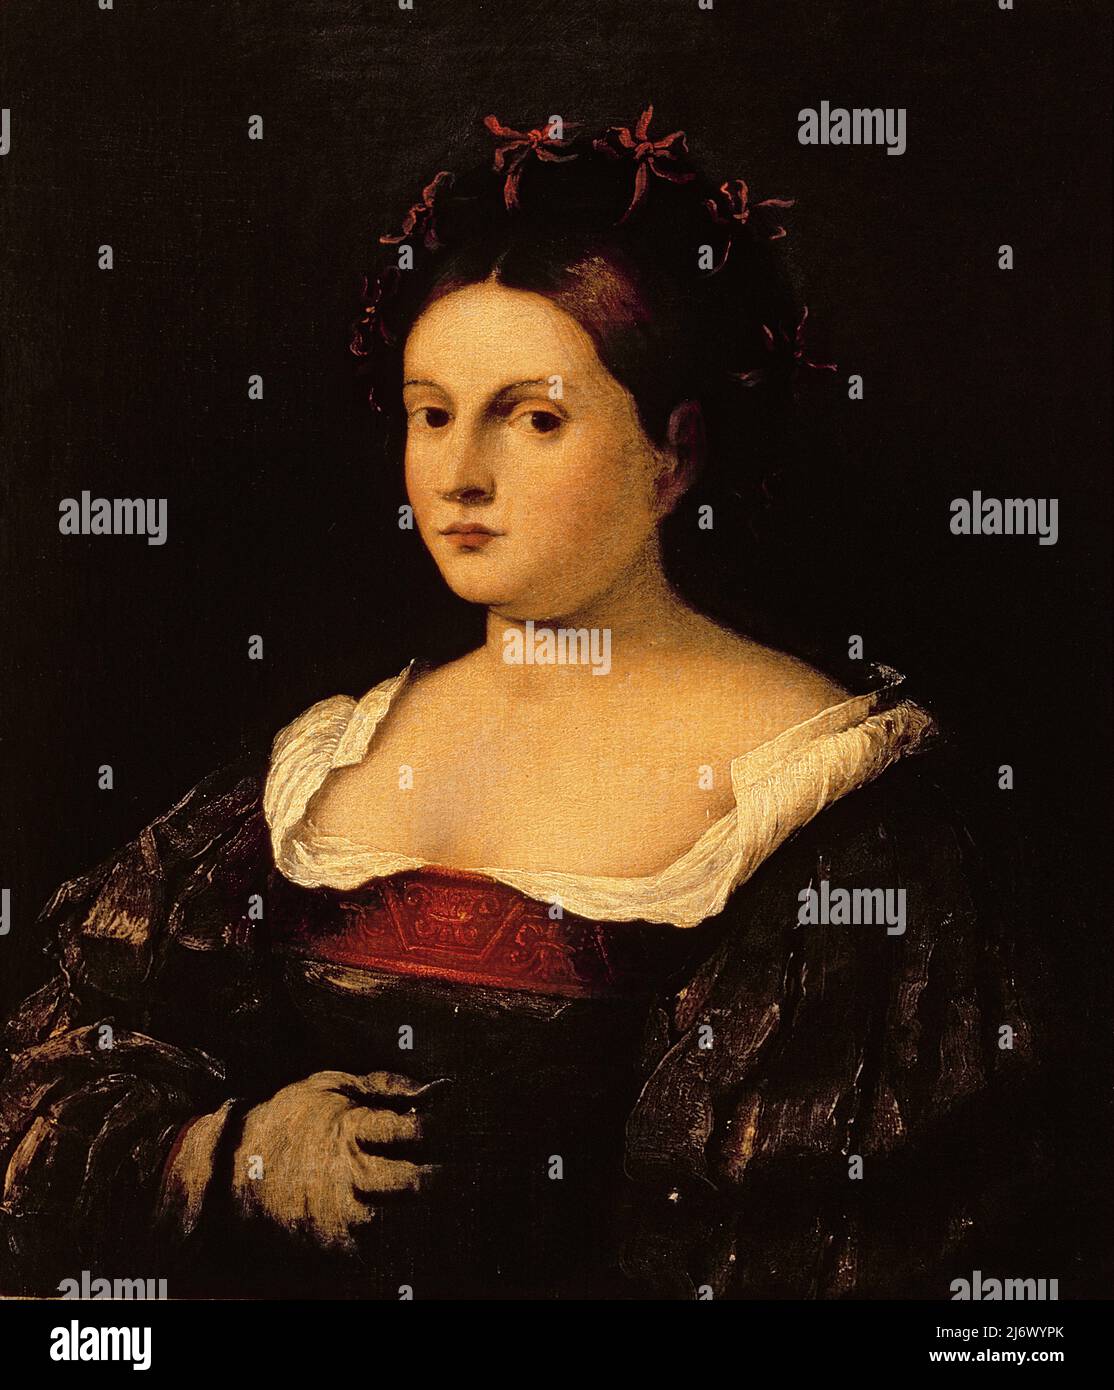 Porträt einer Frau von Pitati, Bonifazio de' (Bonifacio Veronese) (ca. 1487-1553); Palazzo Pitti, Florenz, Italien; Italienisch, Außerhalb des Urheberrechts. Stockfoto